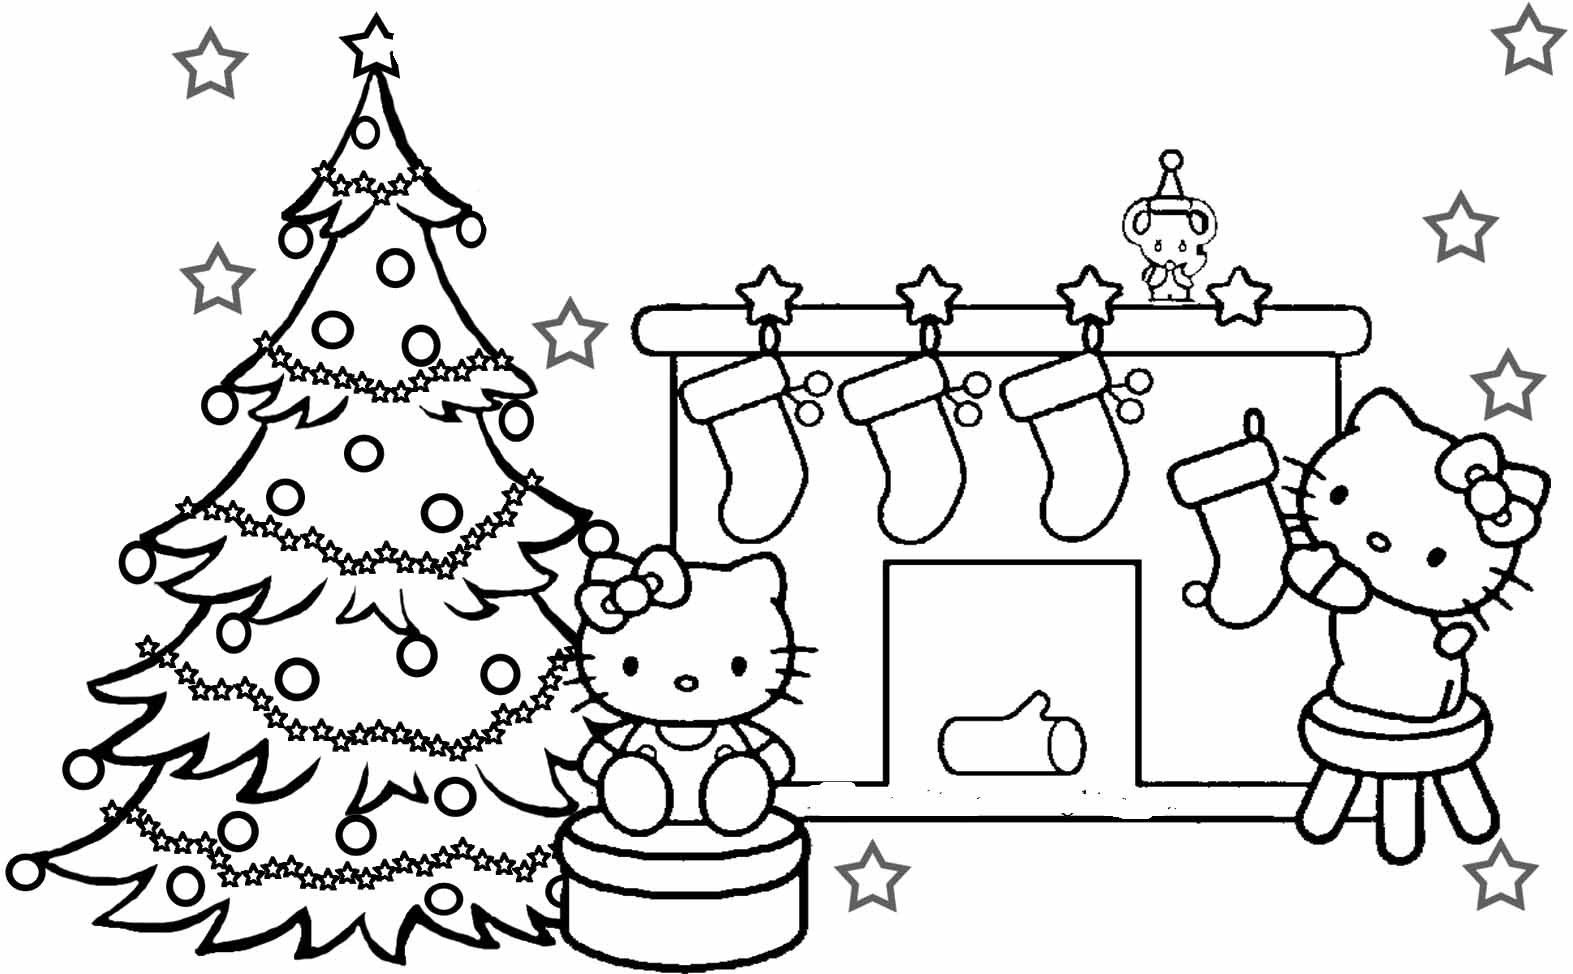 Printable Coloring Pages Christmas
 Christmas Coloring Pages For Kids Printable Coloring Home